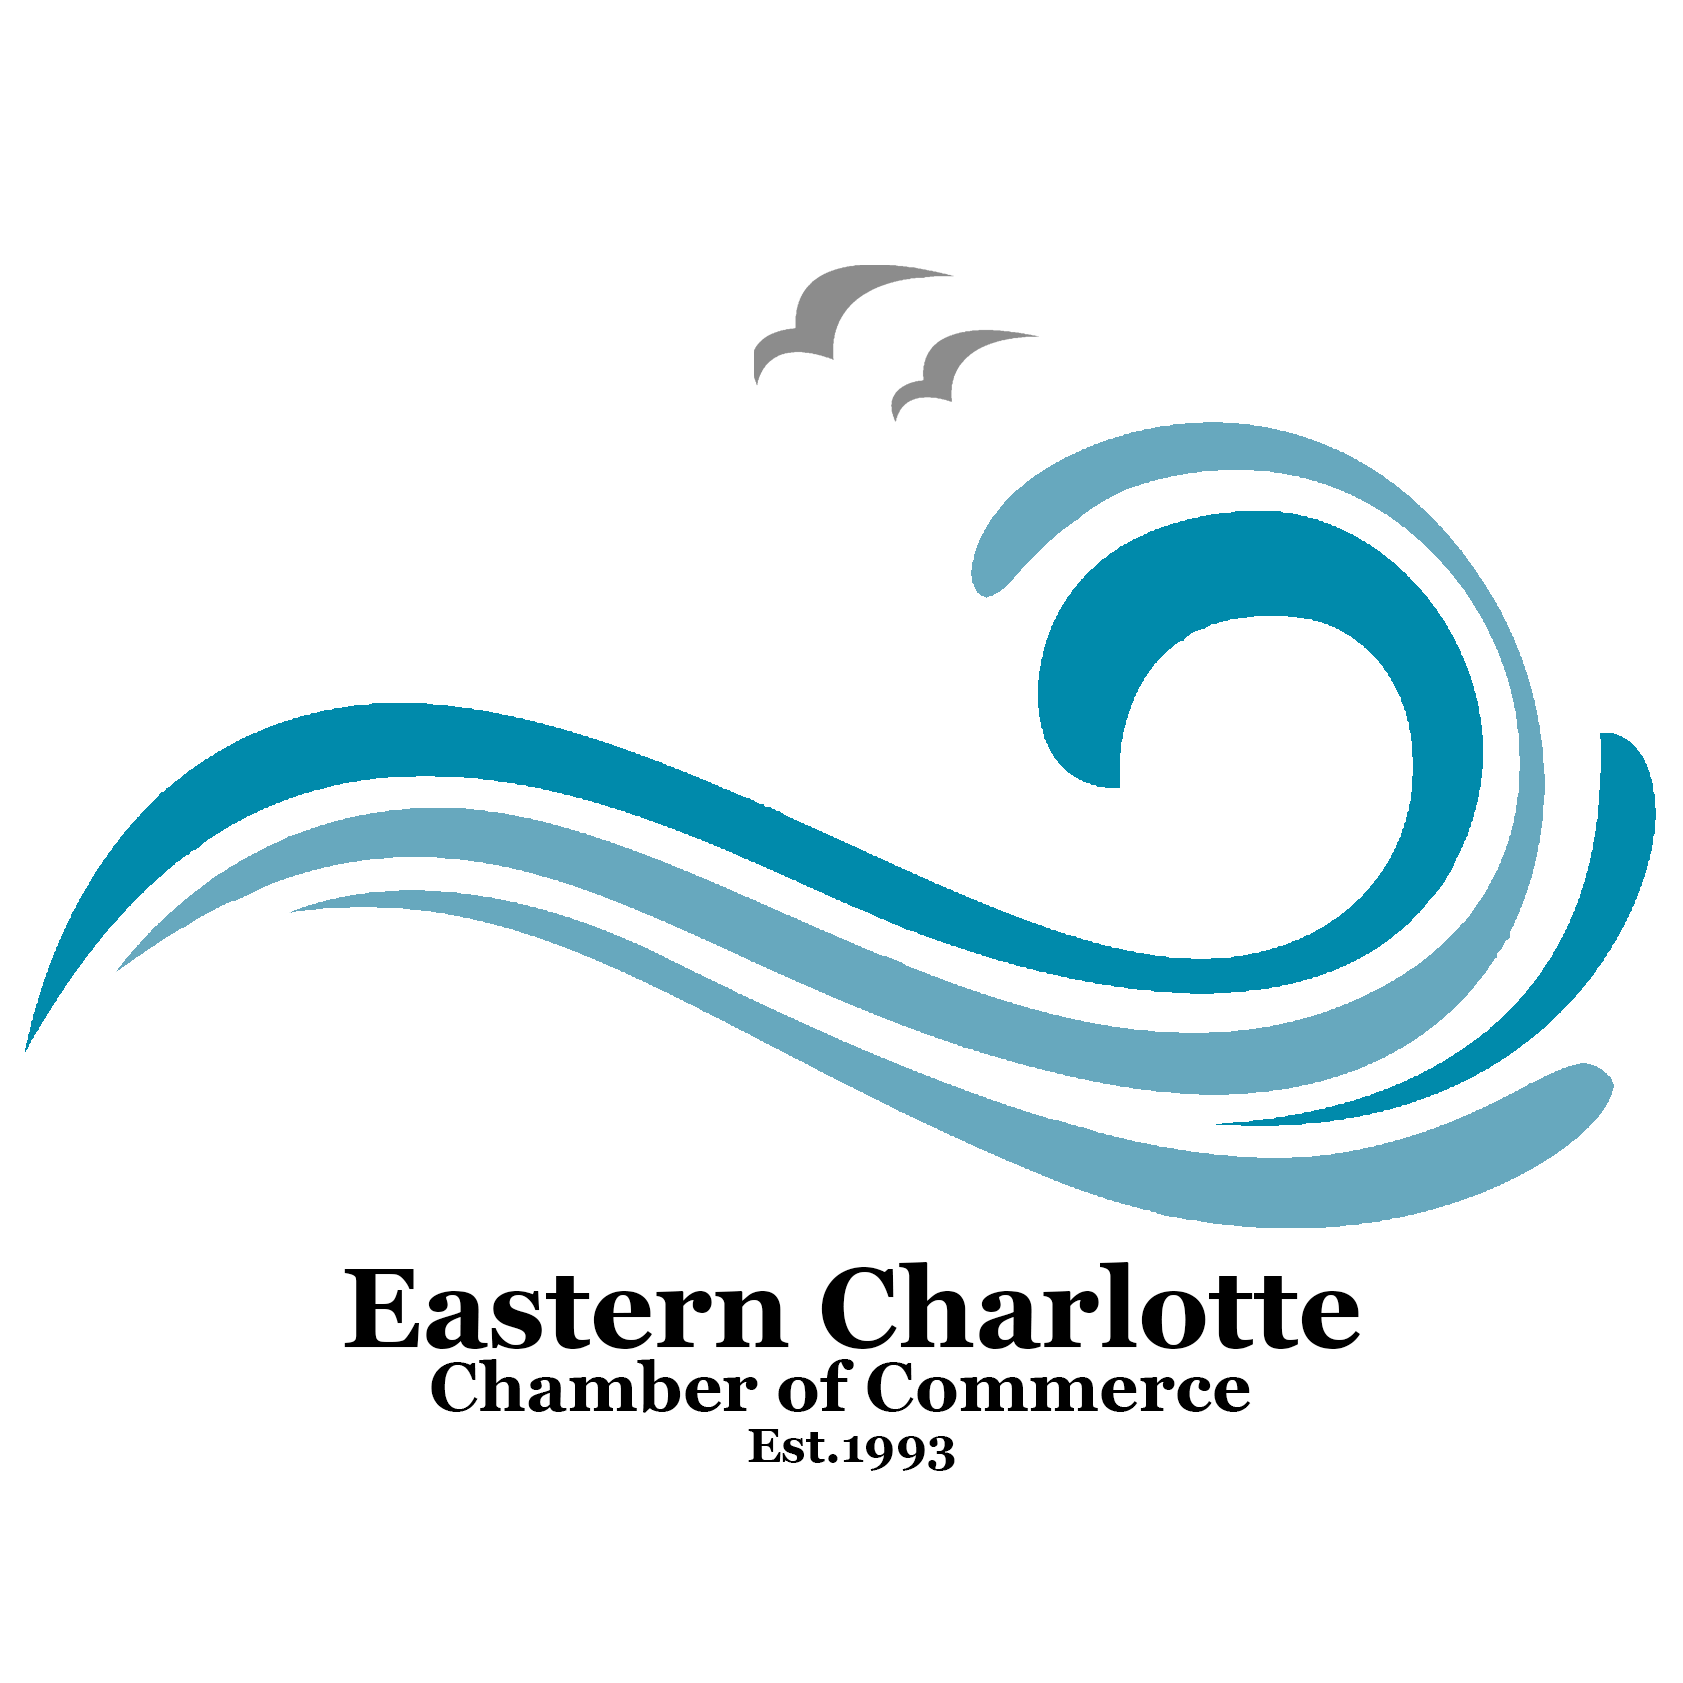 Eastern Charlotte Chamber of Commerce